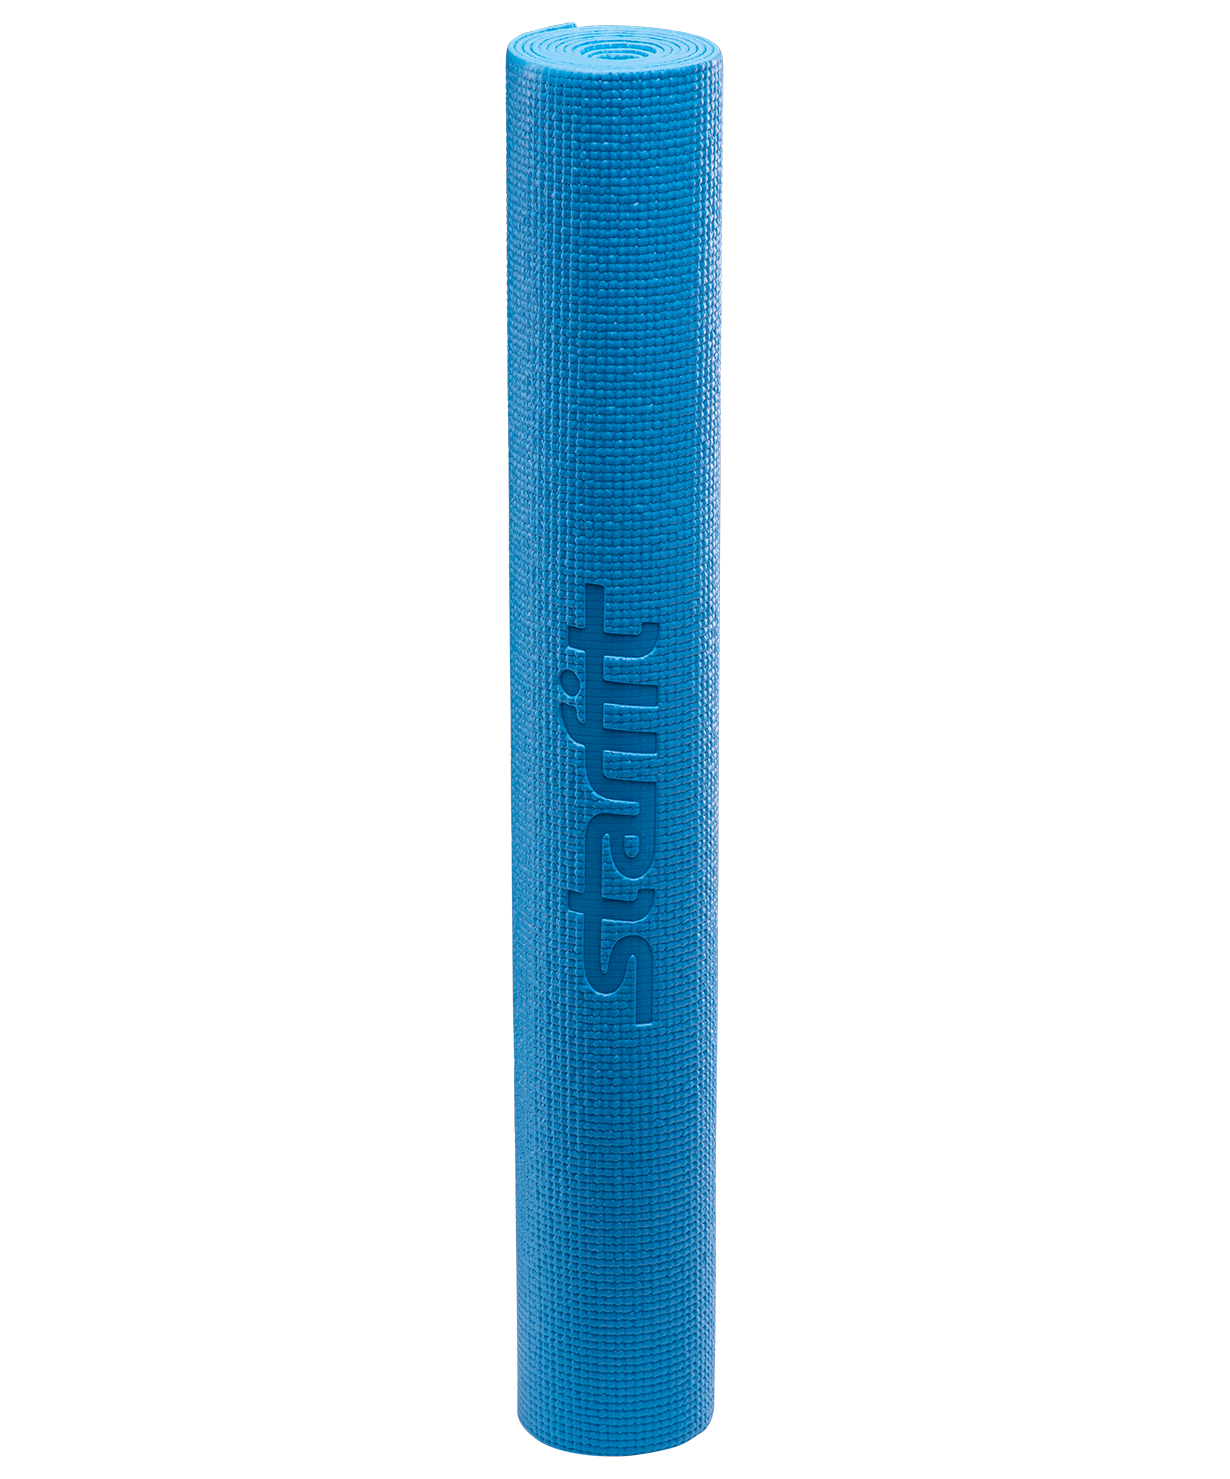 Коврик для йоги FM-101, PVC, 173x61x0,6 см, синий